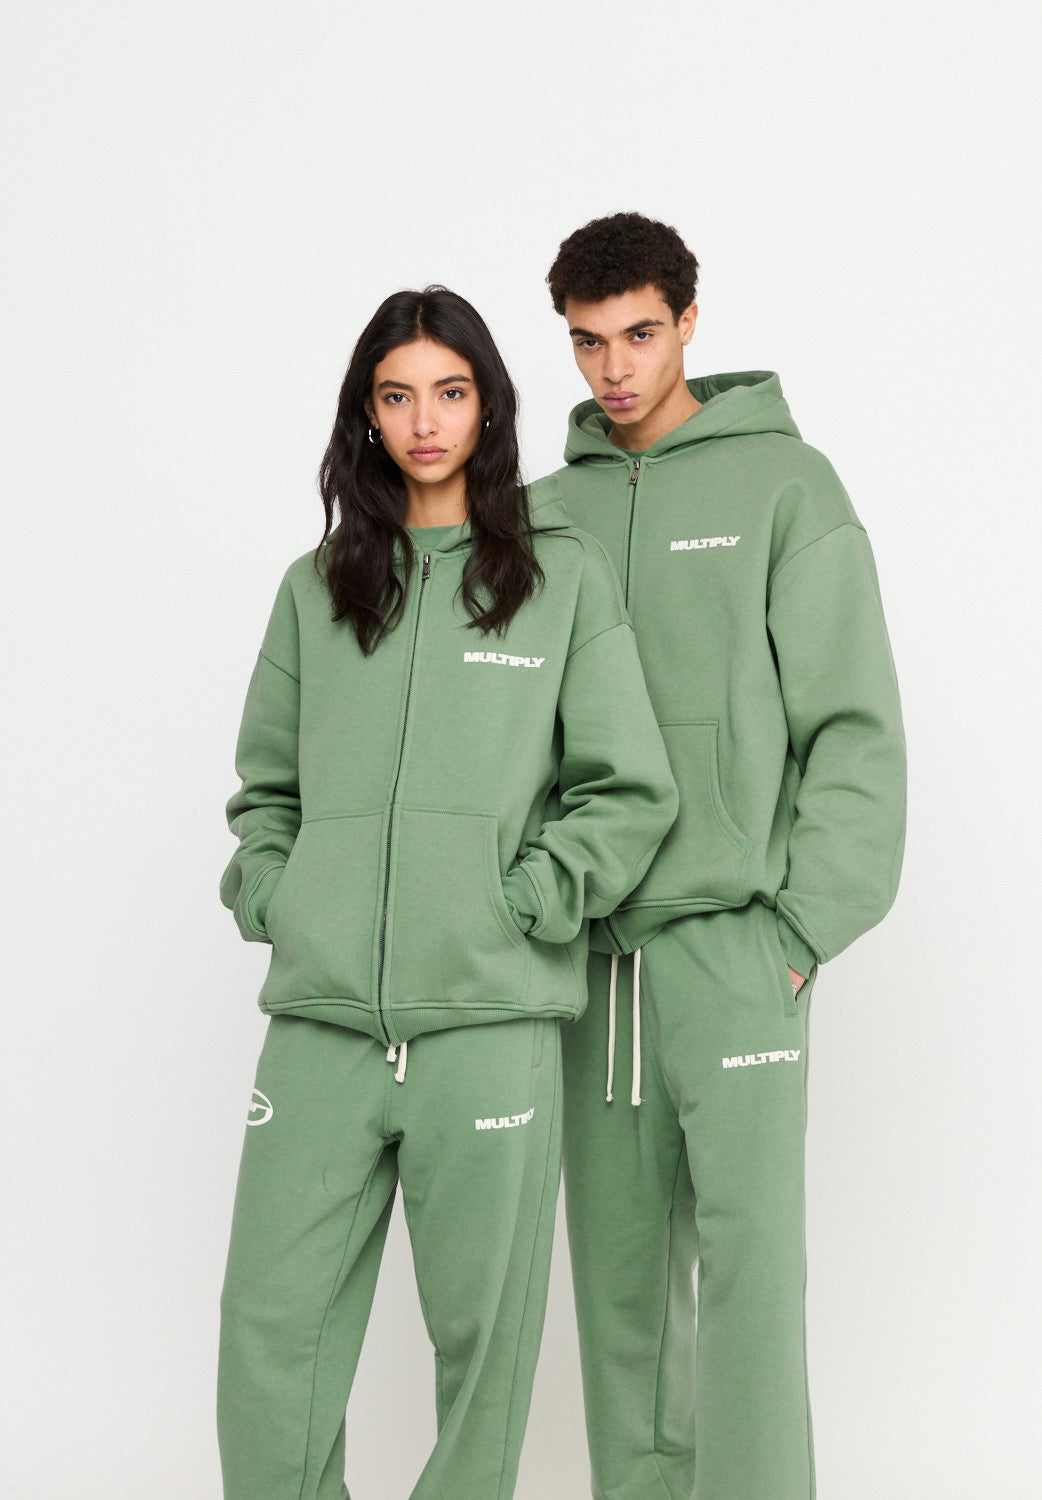 Oversize zip hoodie MULTIPLY Hedge Green